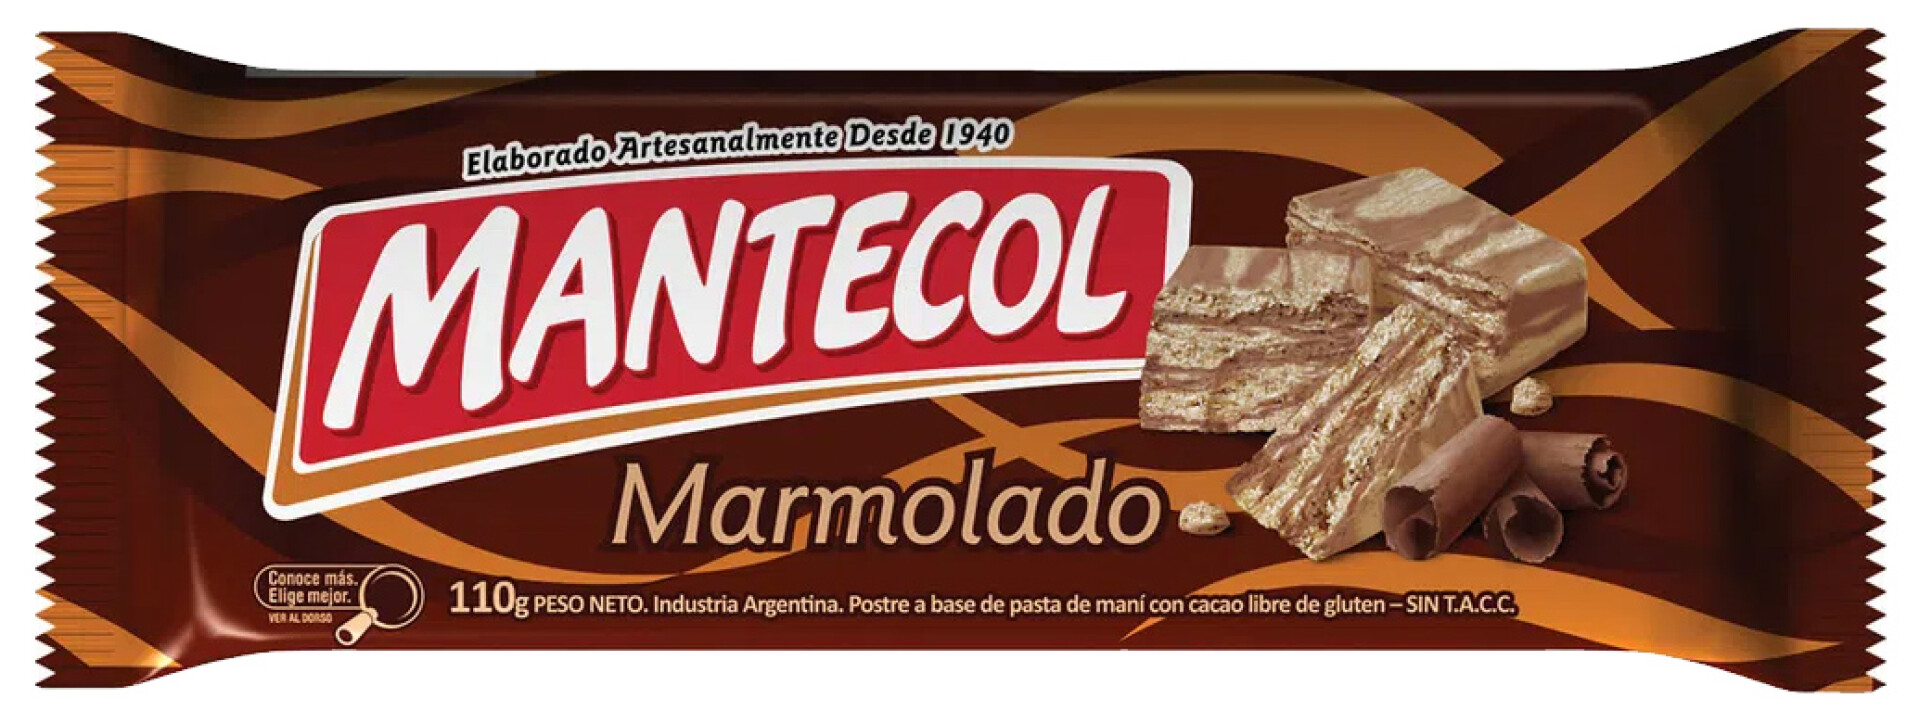 MANTECOL 111G MARMOLADO 